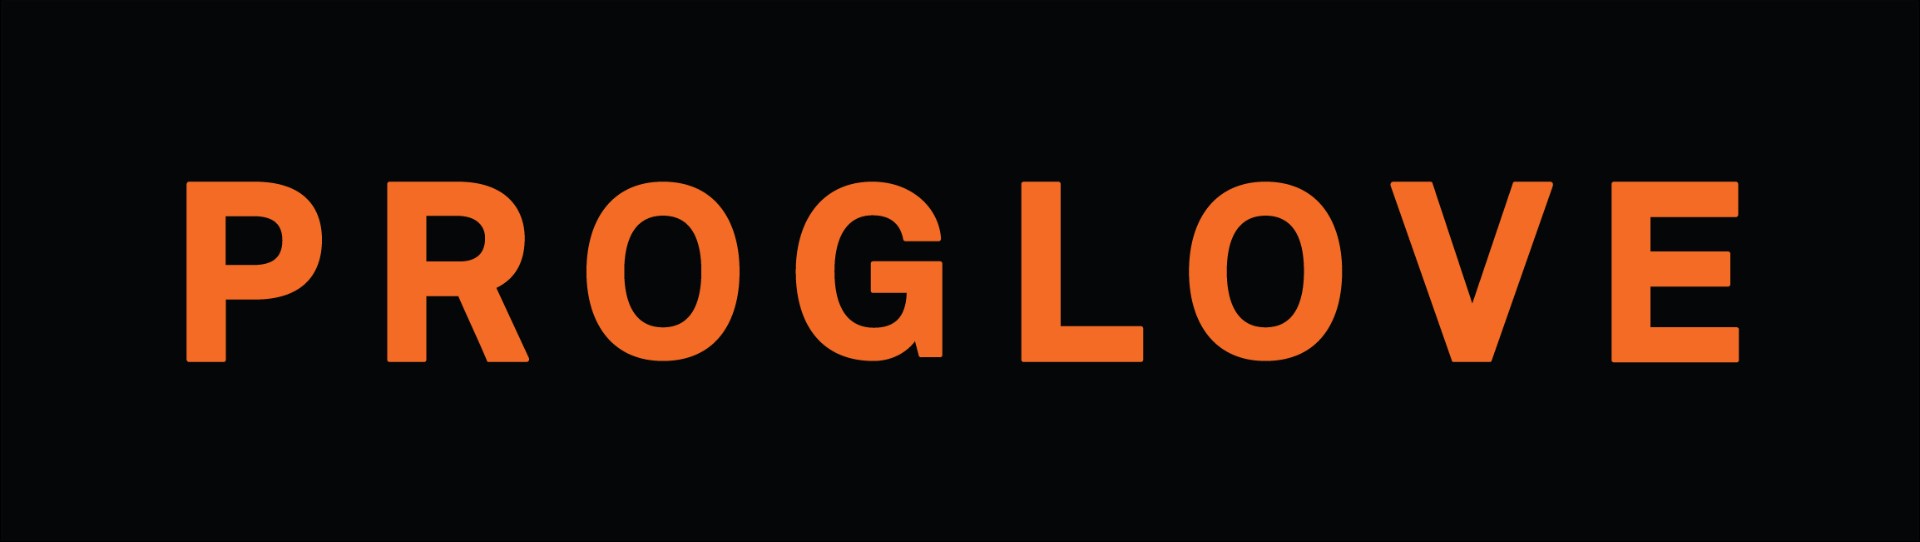 Proglove logo Black.png